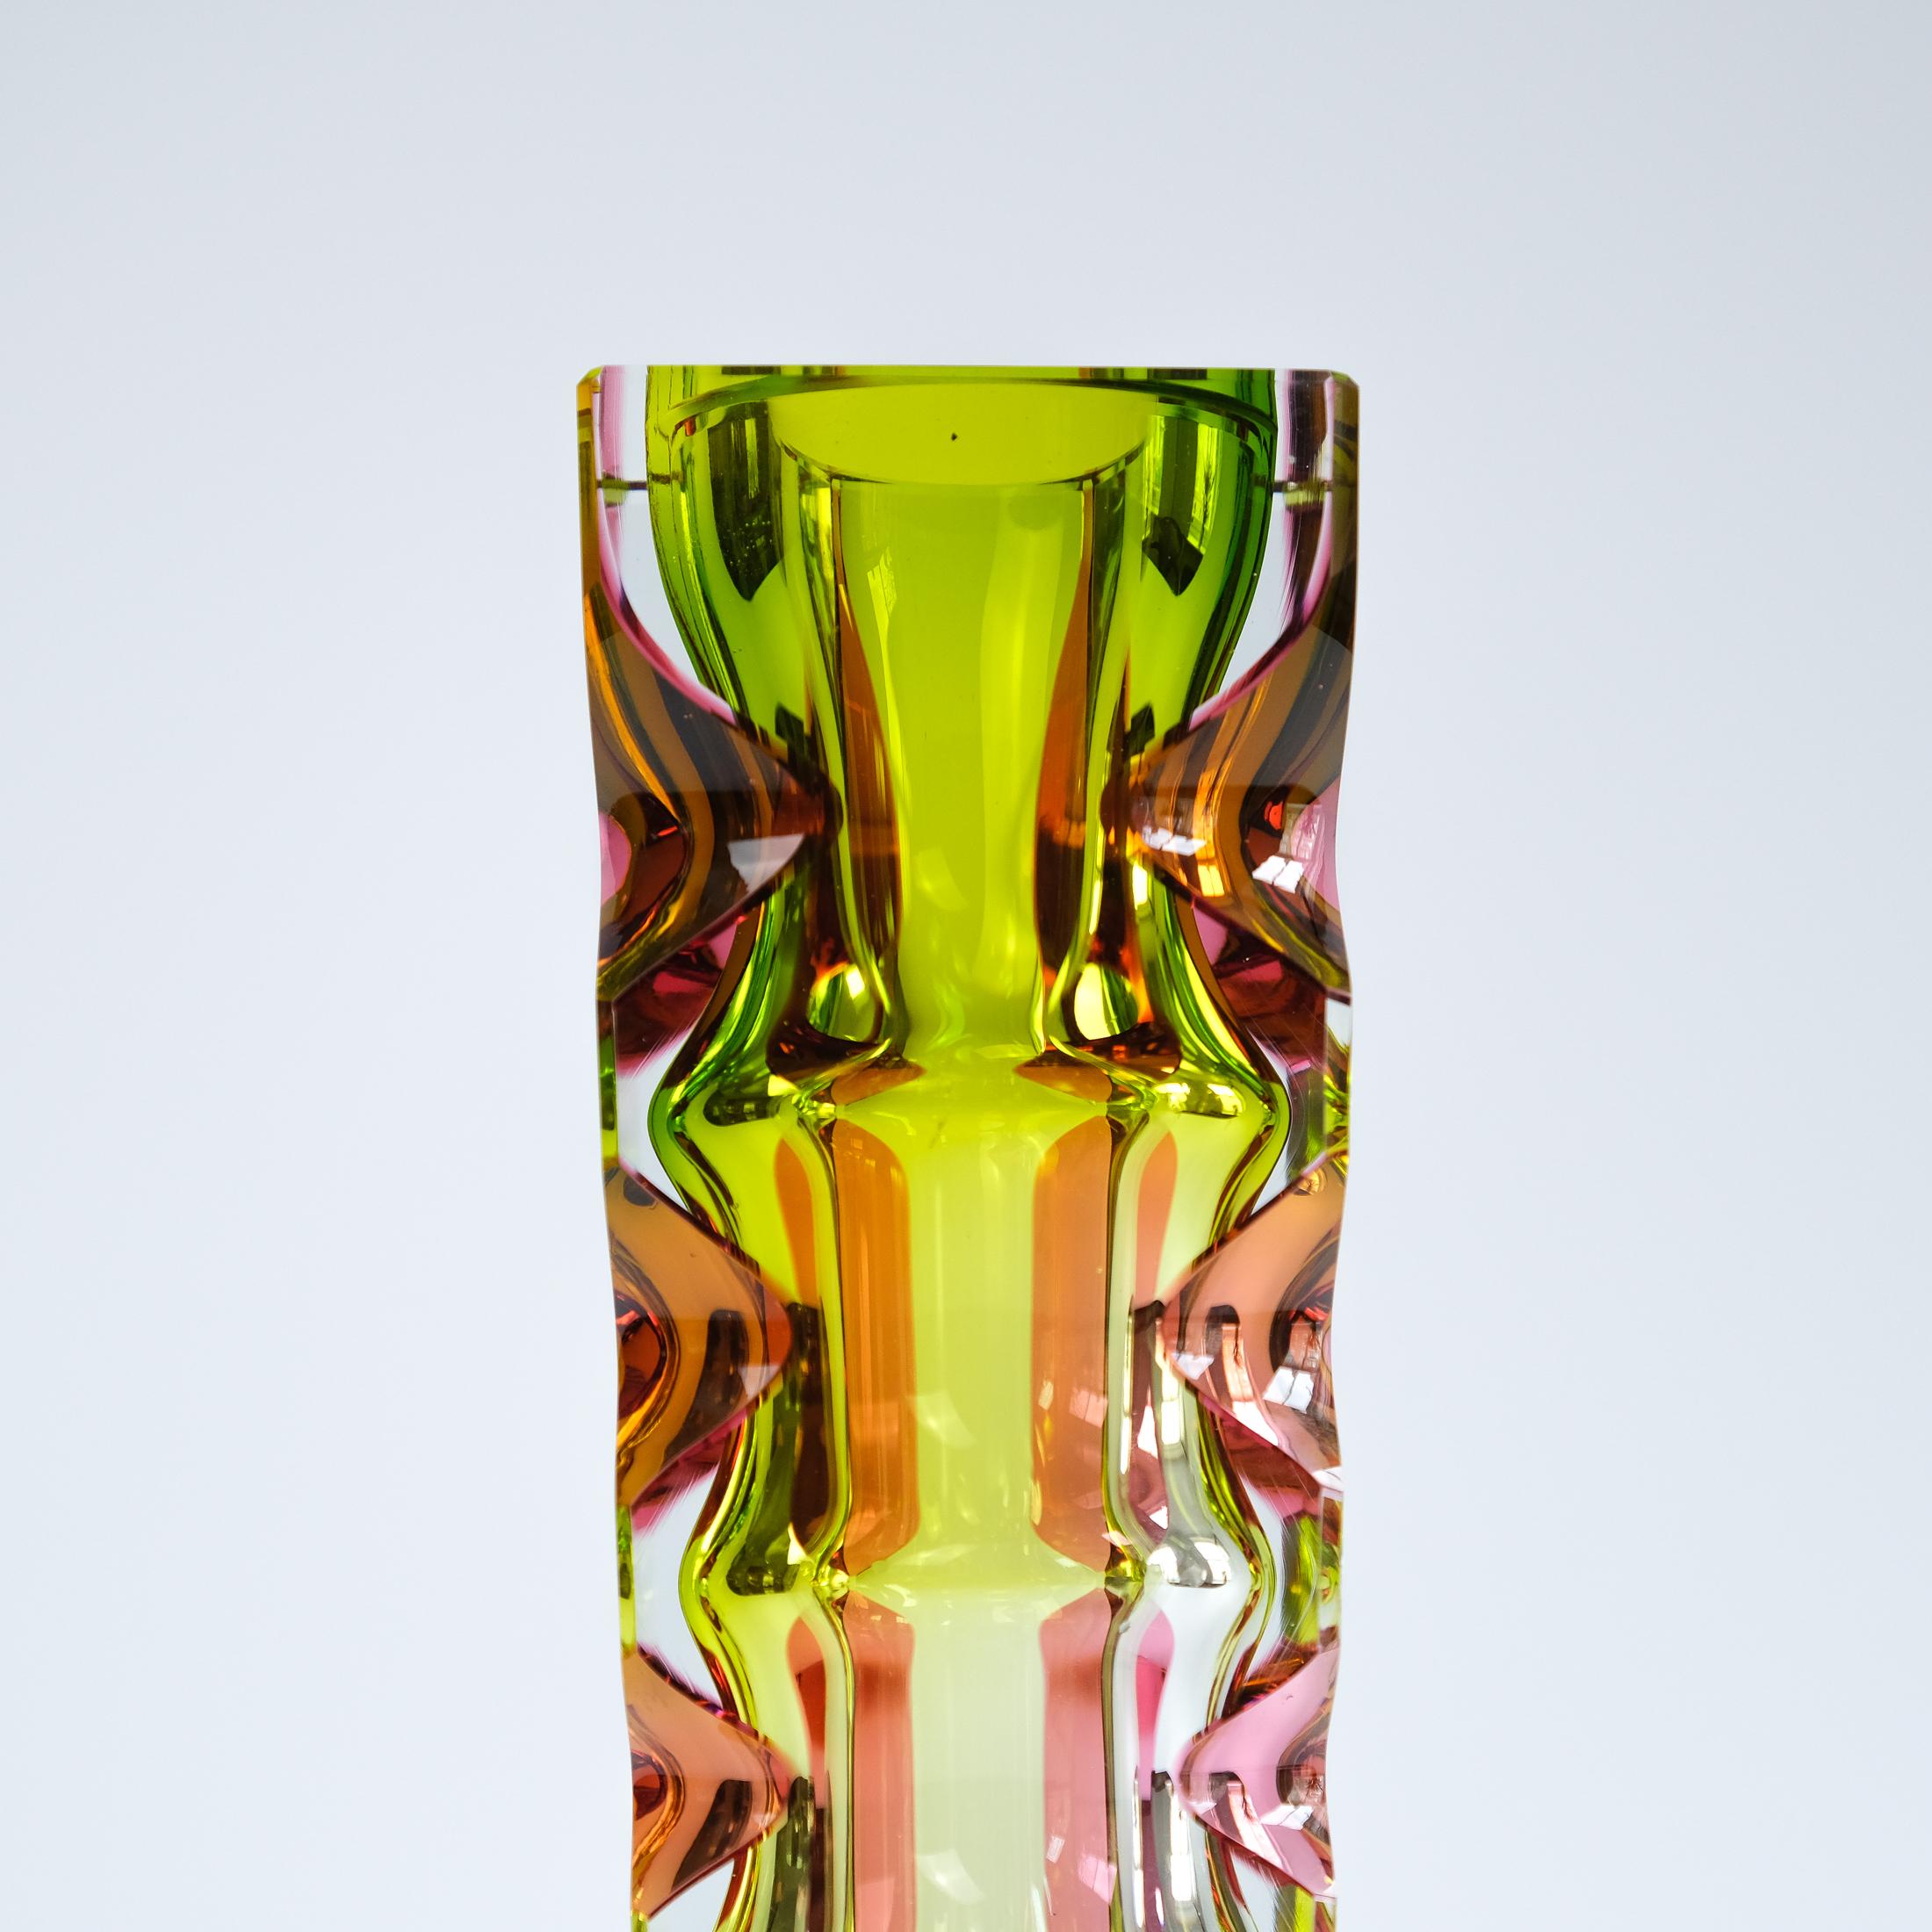 Oldrich Lipsky Cased & Cut Glass Vase For Novy Bor Exbor, Czechoslovakia c.1964 For Sale 4